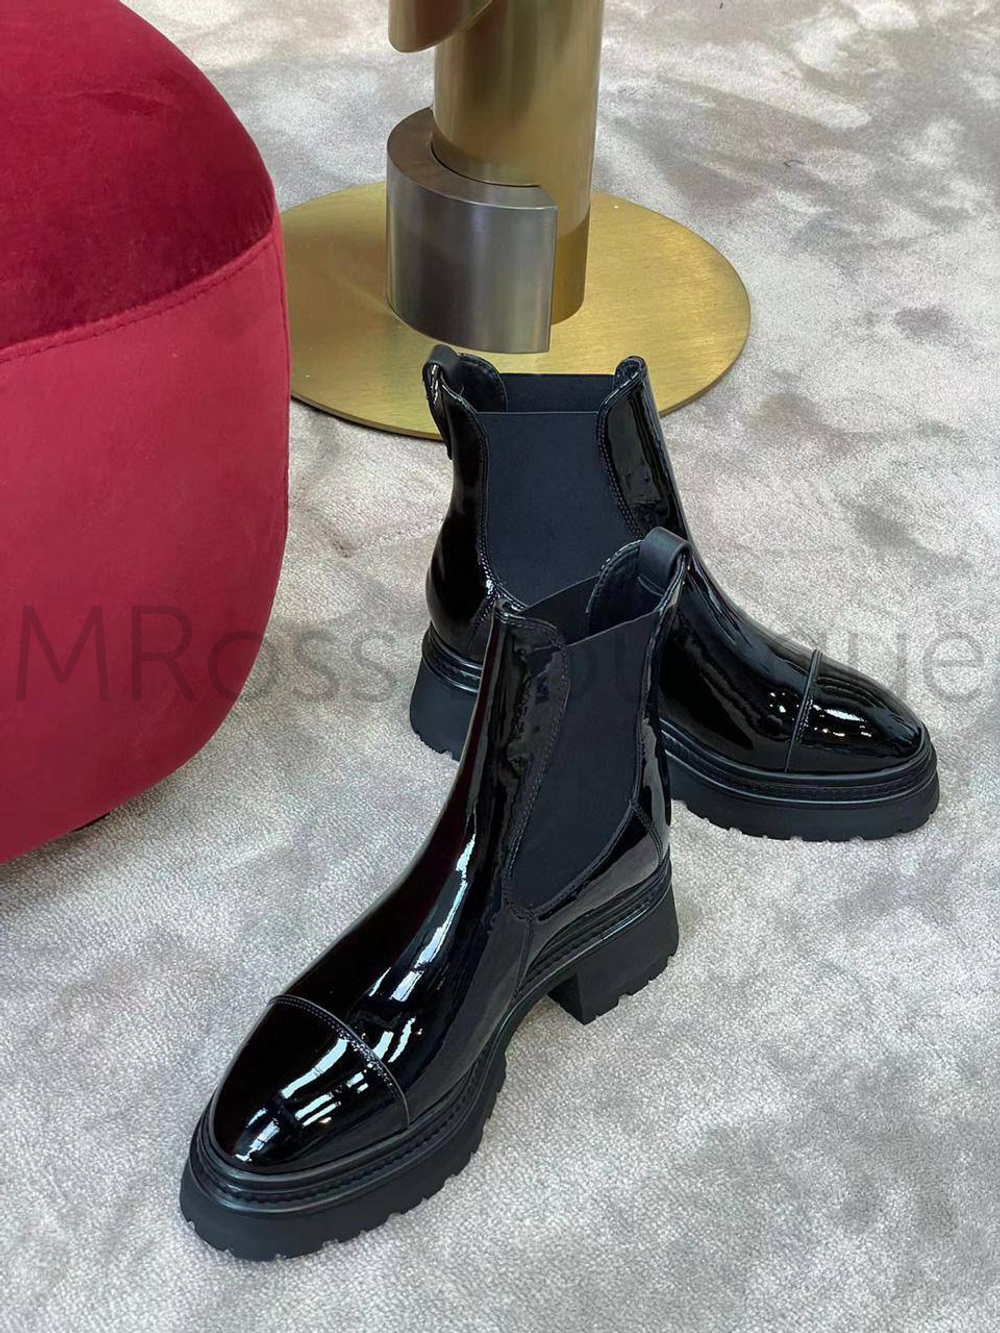 Ботинки лаковые челси Chanel (Шанель) премиум класса